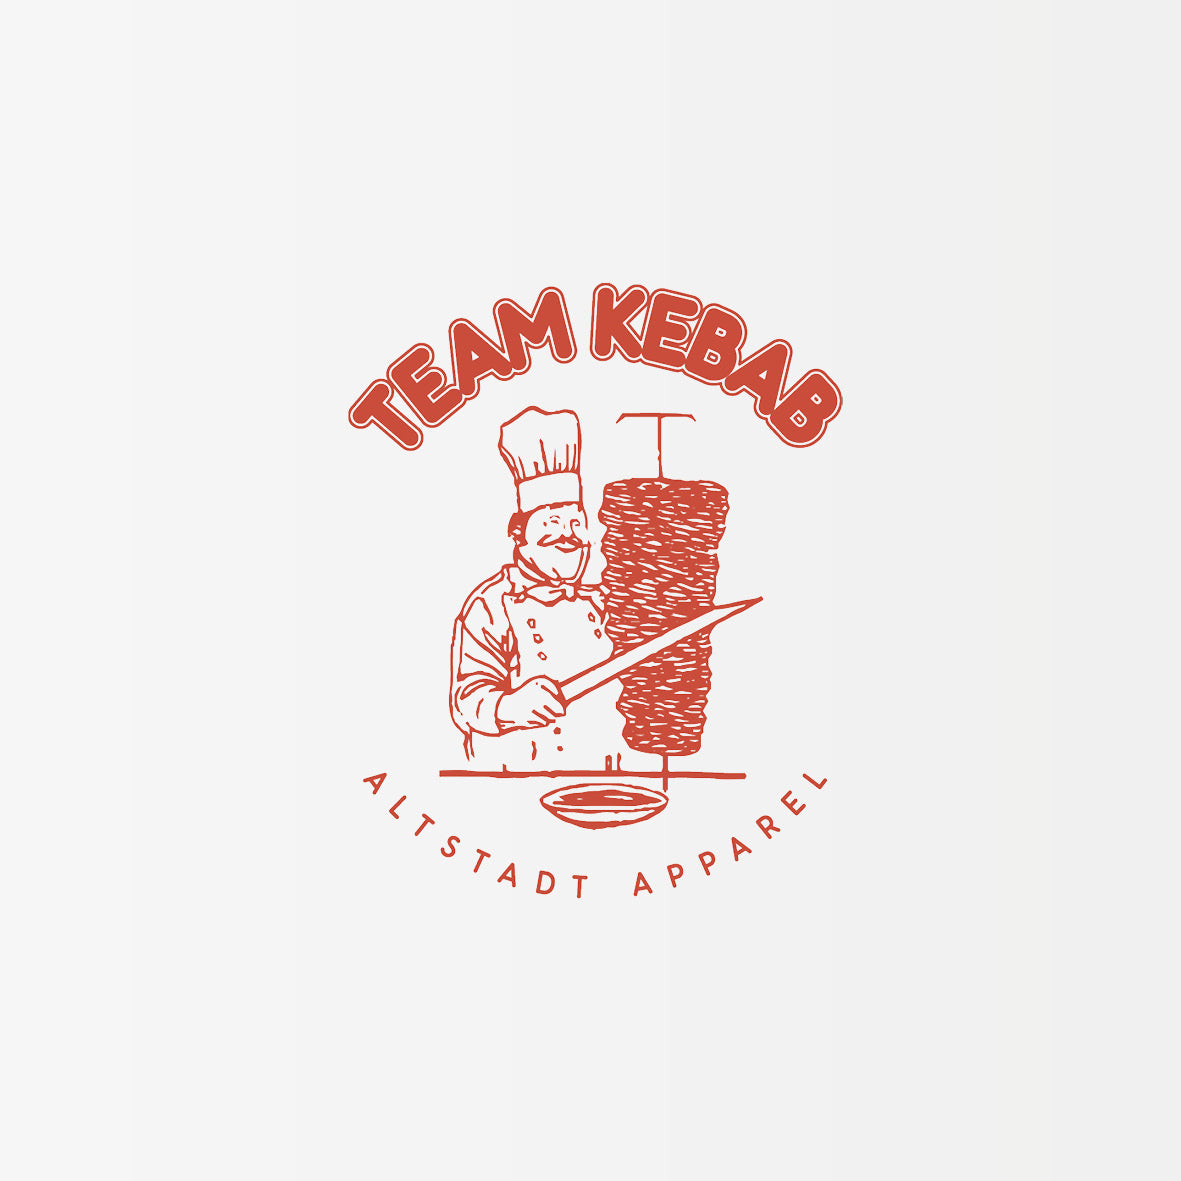 Team Kebab